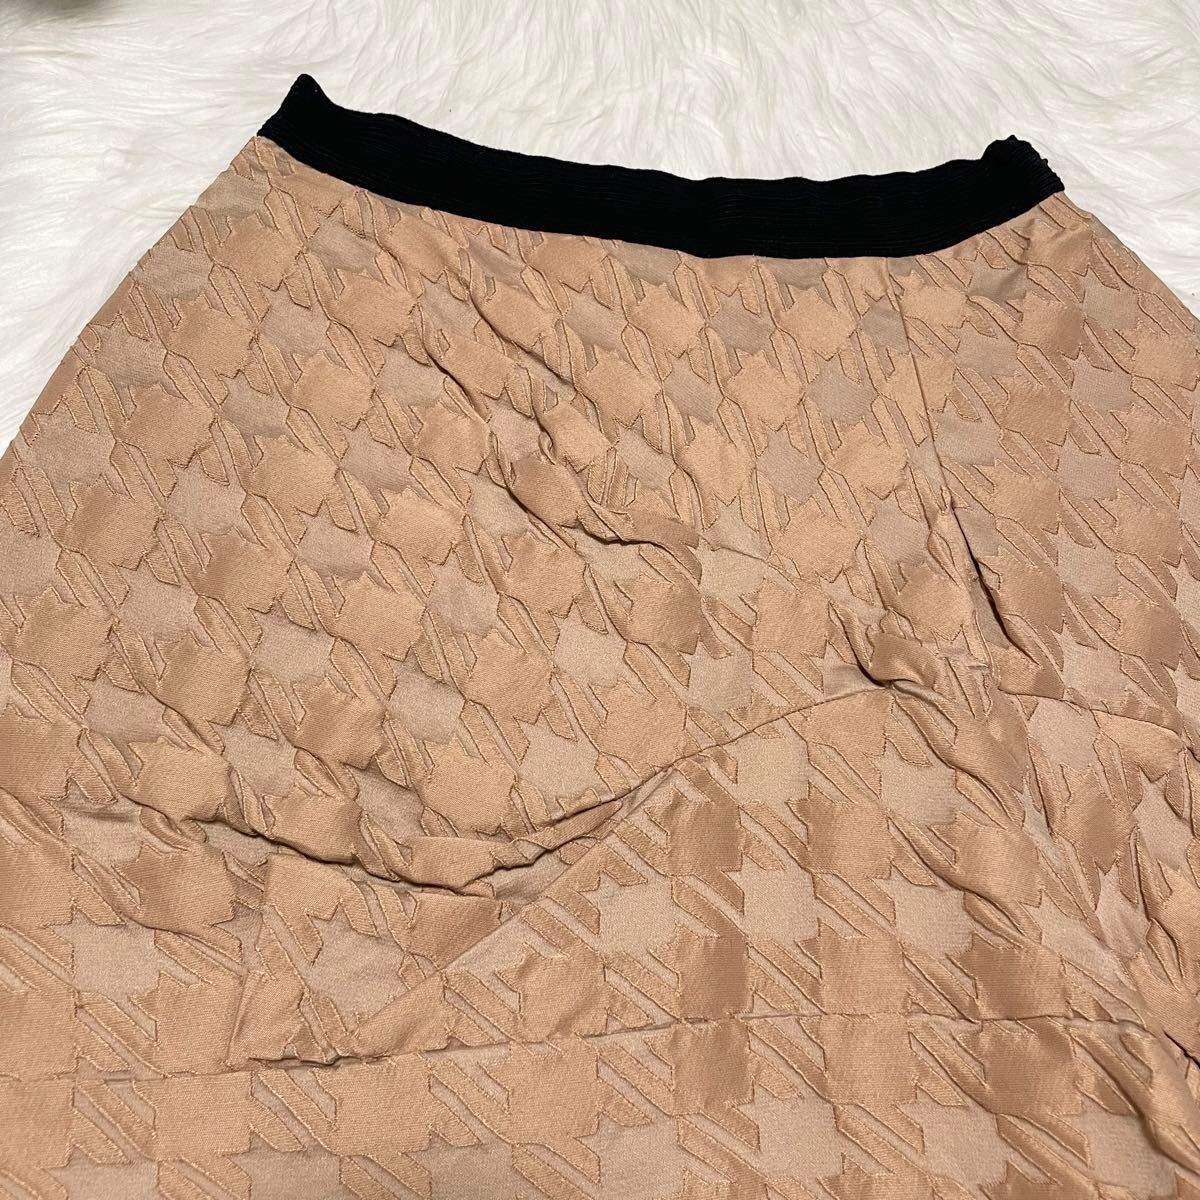 本物 コレクションモデル マルニ 千鳥格子模様 ツイスト加工 デザイン スカート 38 光沢ベージュオレンジ系 MARNI